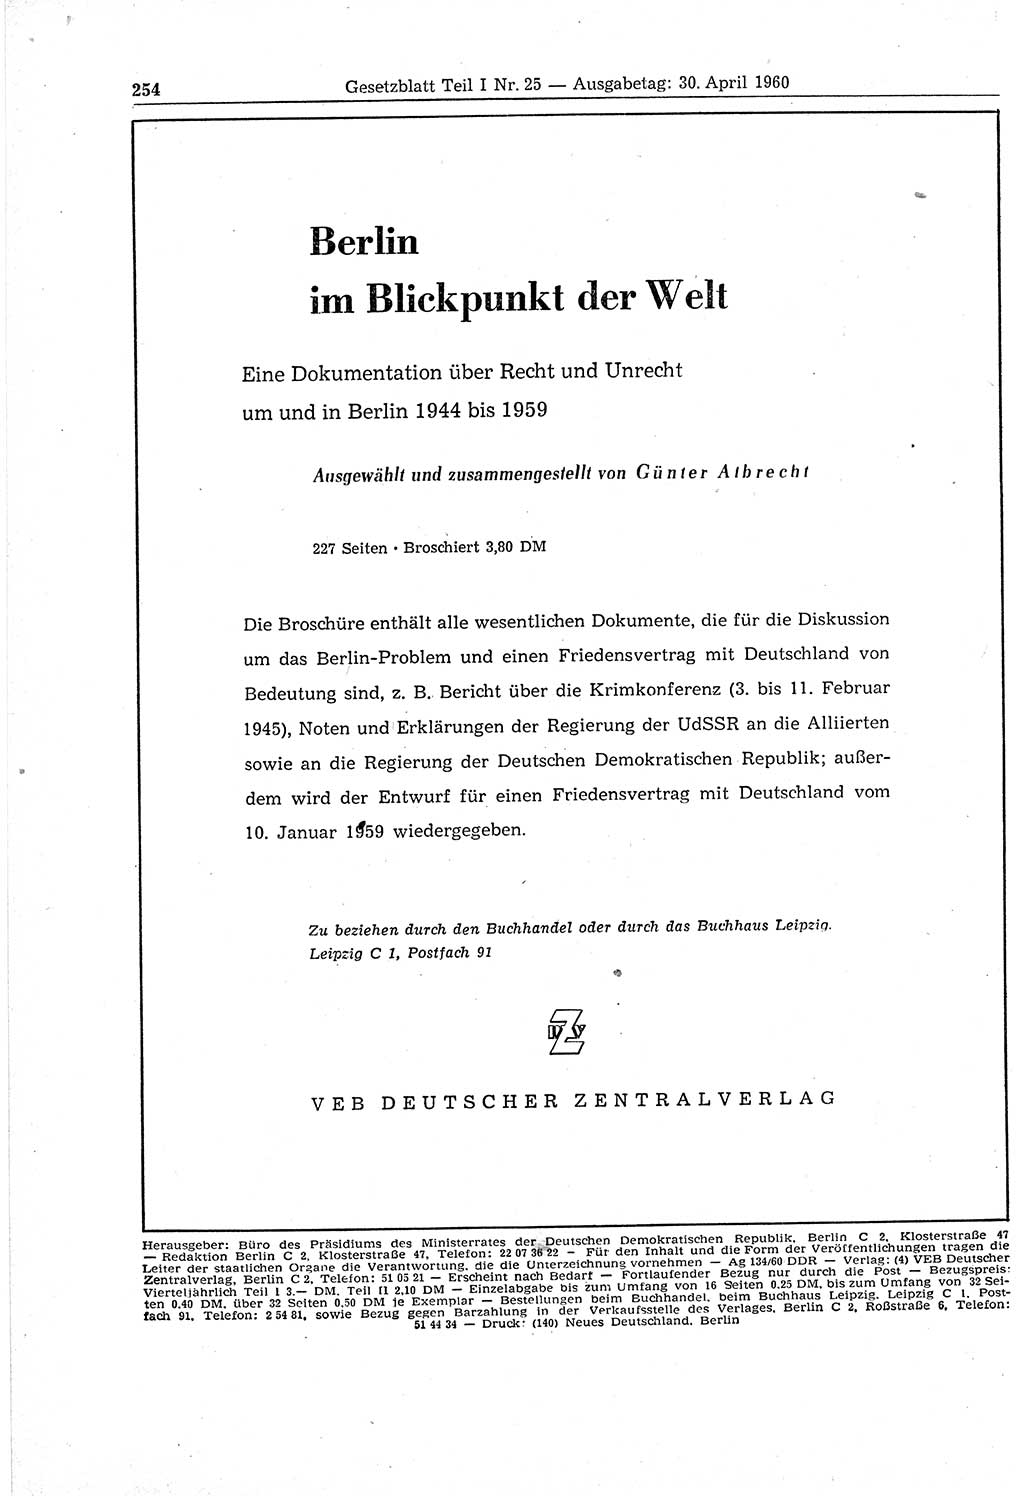 Gesetzblatt (GBl.) der Deutschen Demokratischen Republik (DDR) Teil Ⅰ 1960, Seite 254 (GBl. DDR Ⅰ 1960, S. 254)